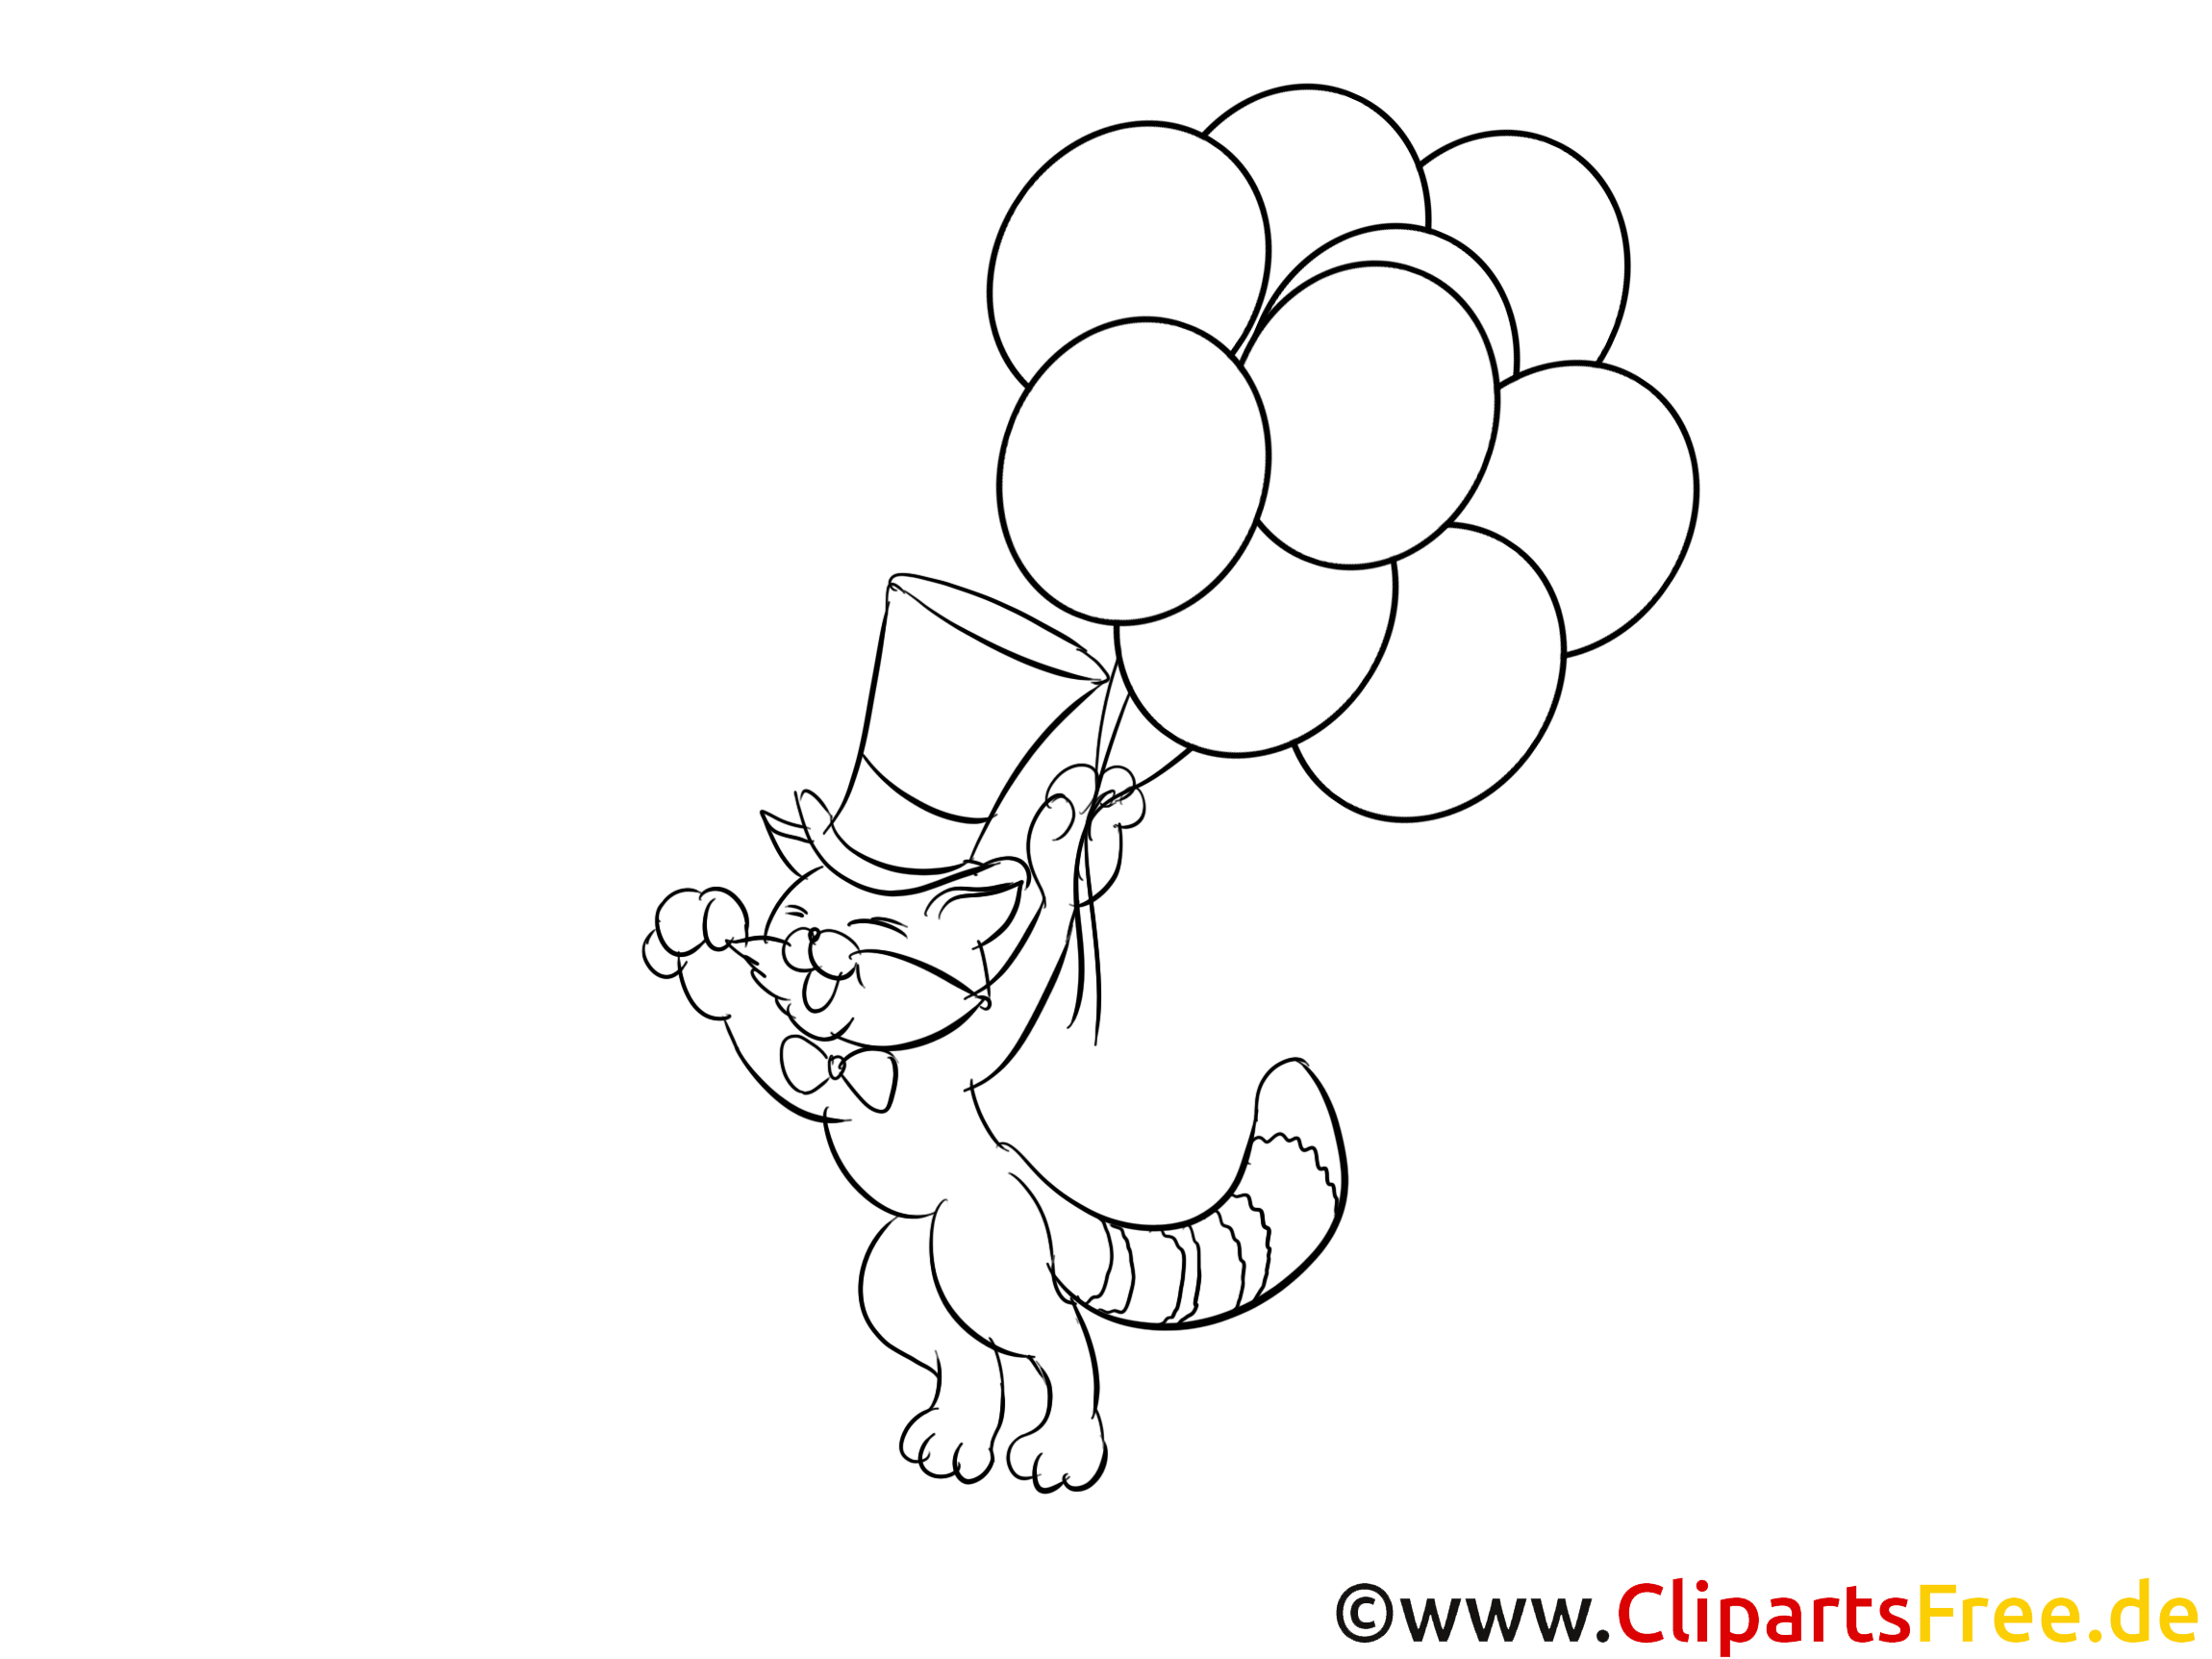 katze fliegt mit luftballons ausmalbilder zum drucken